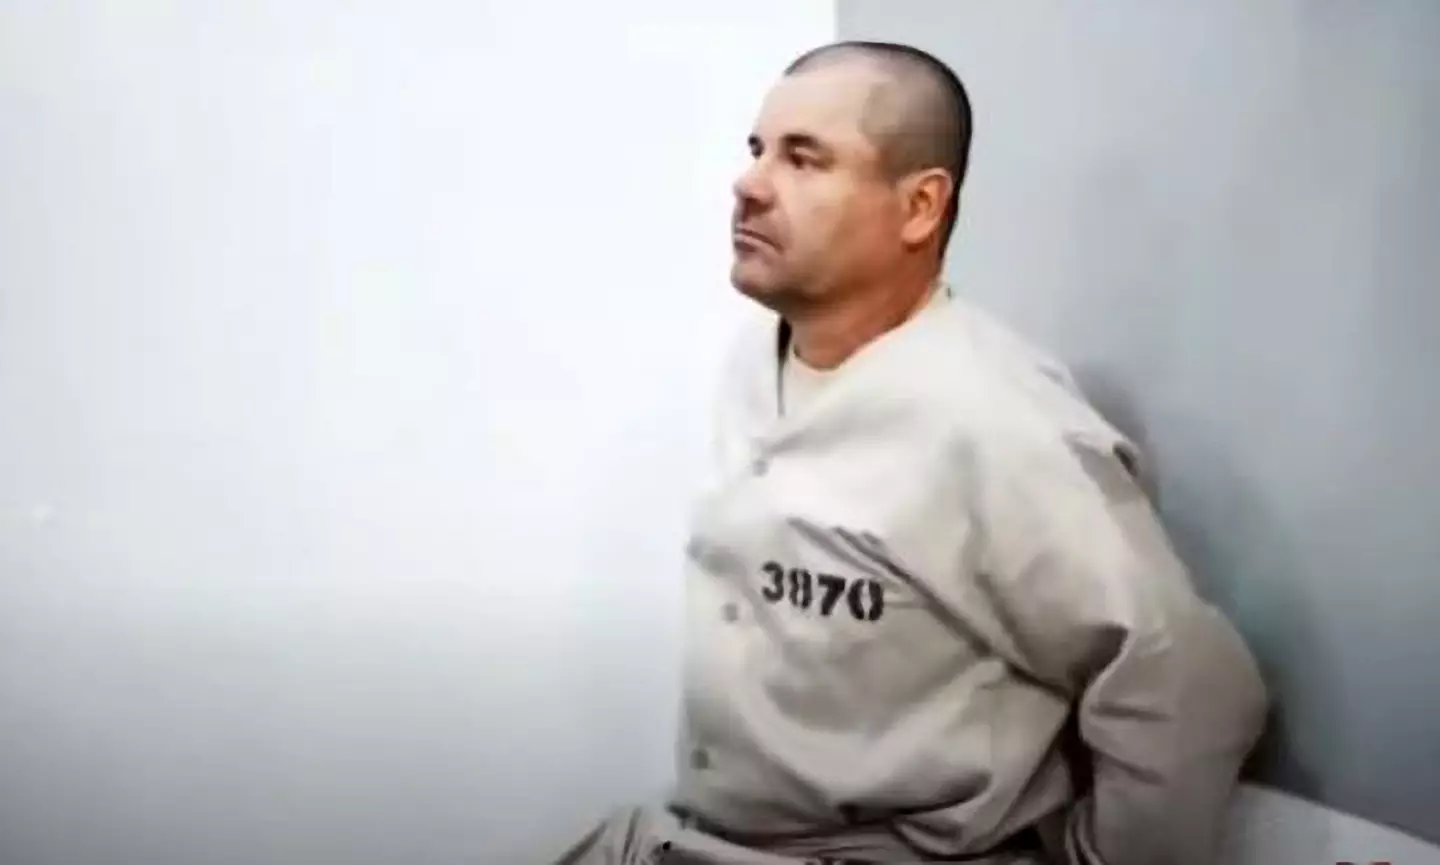 El Chapo is serving a life sentence.